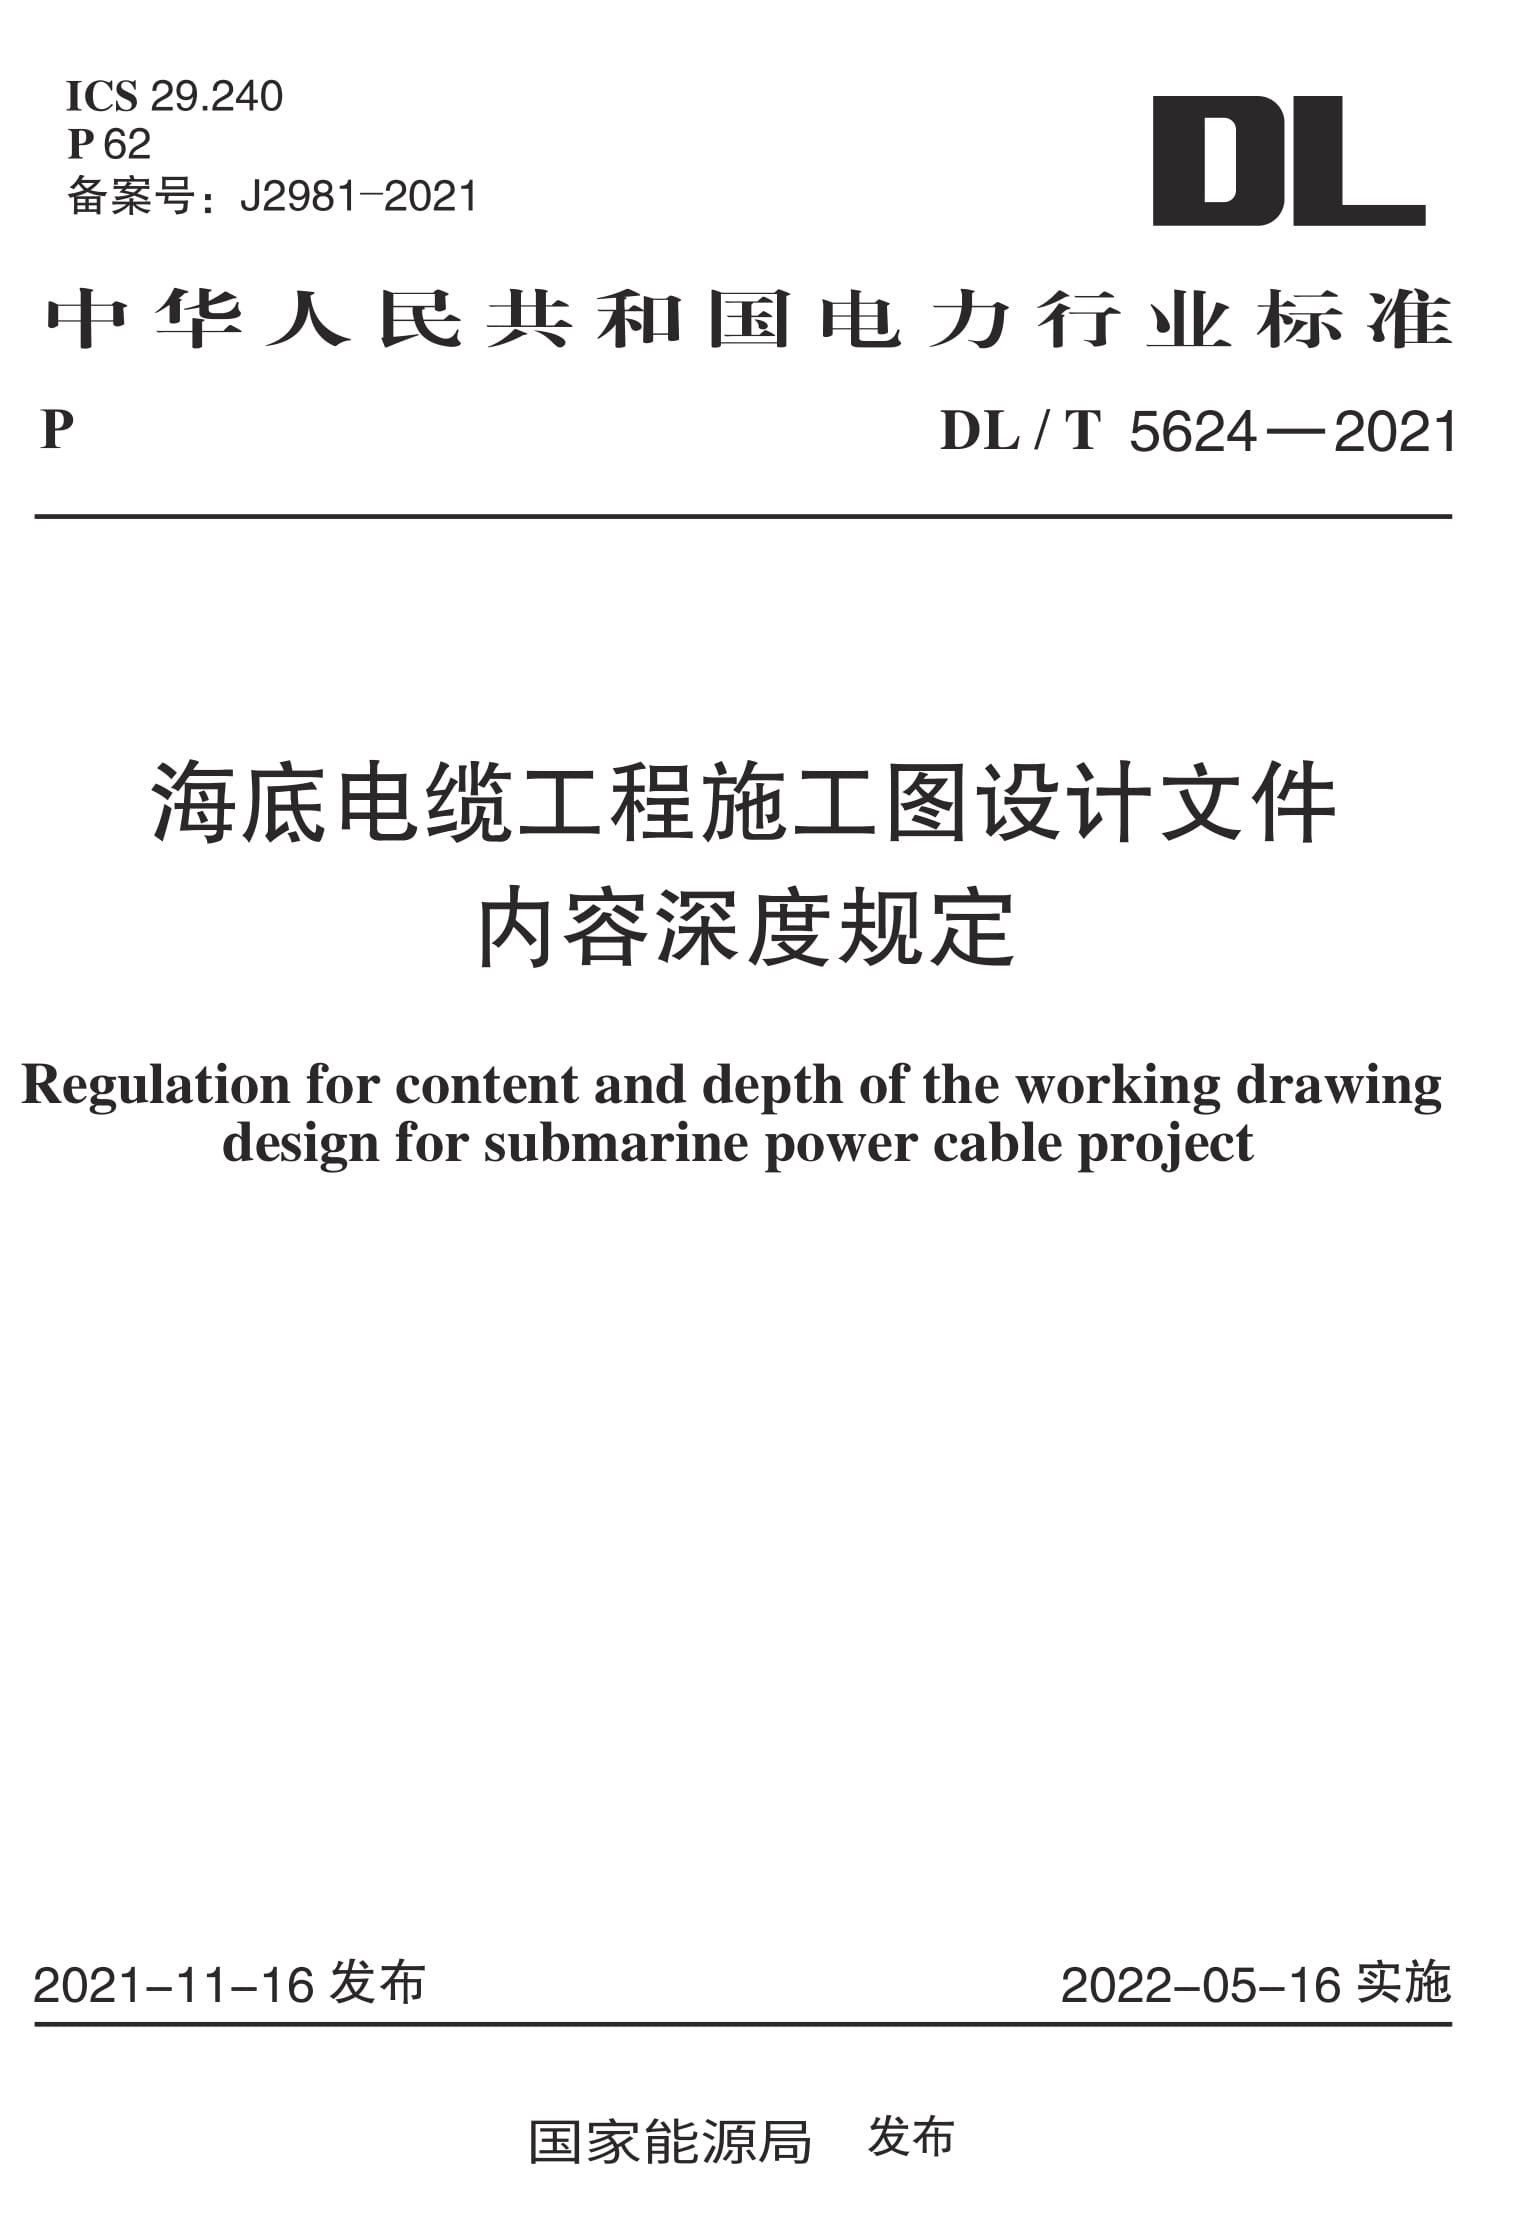 DL/T 5624-2021 海底电缆工程施工图设计文件内容深度规定